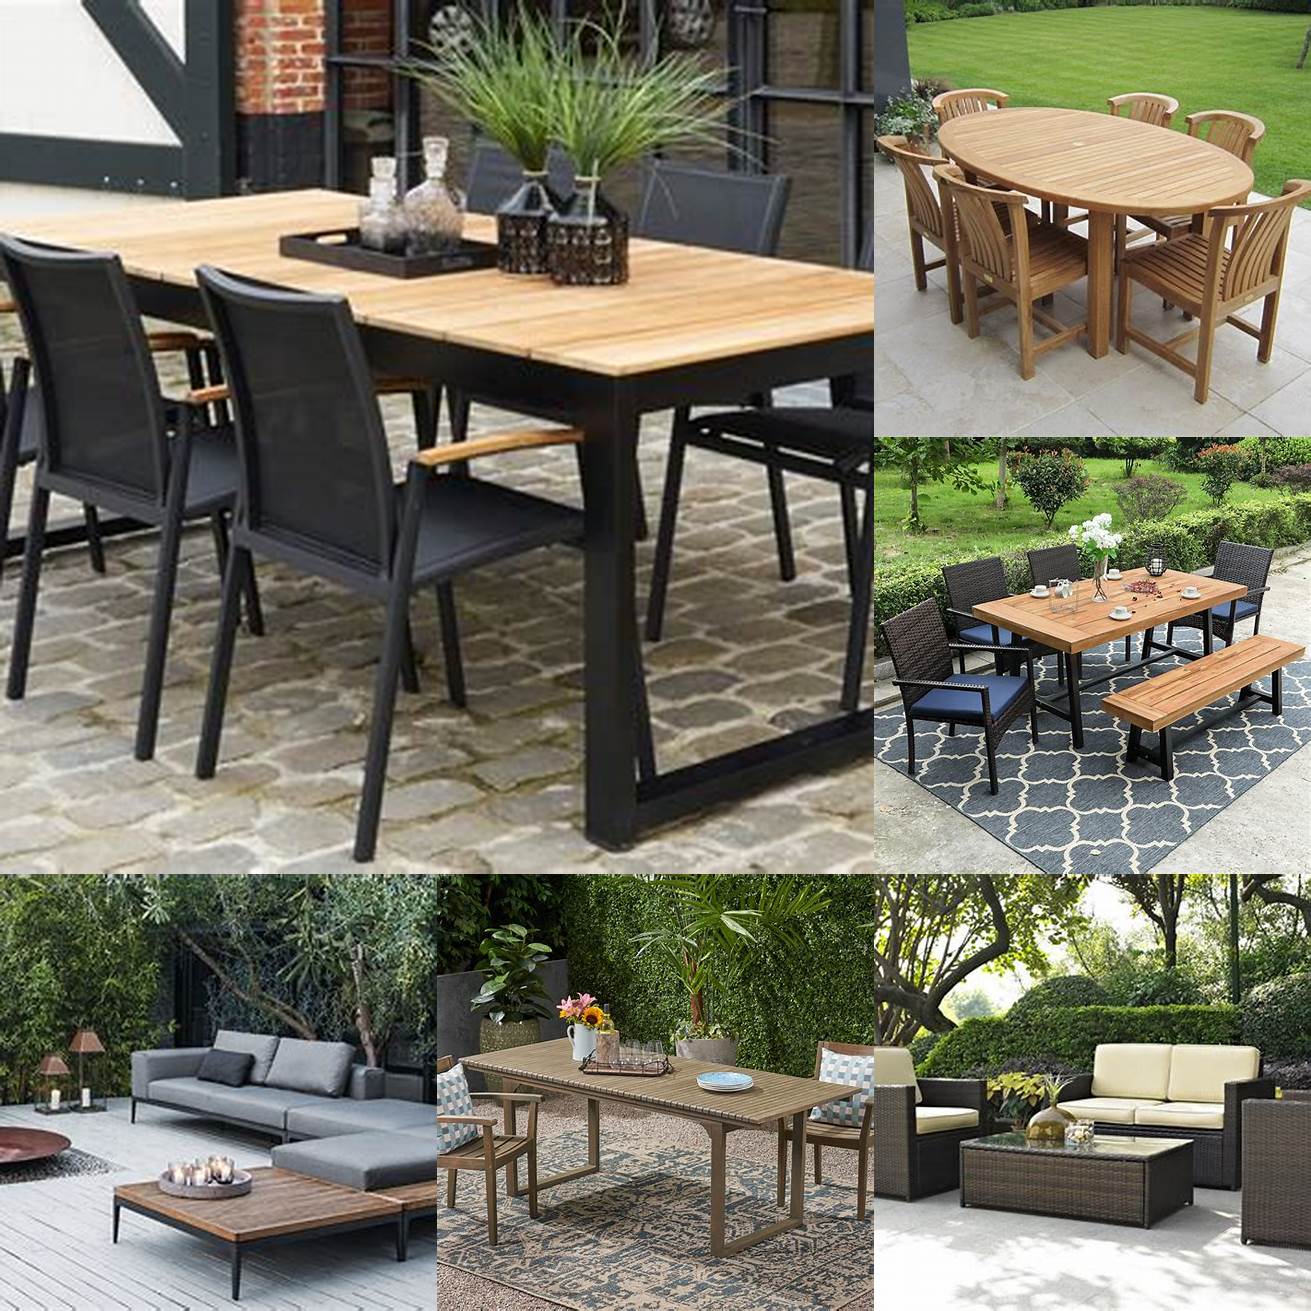 A garden table with a contemporary design